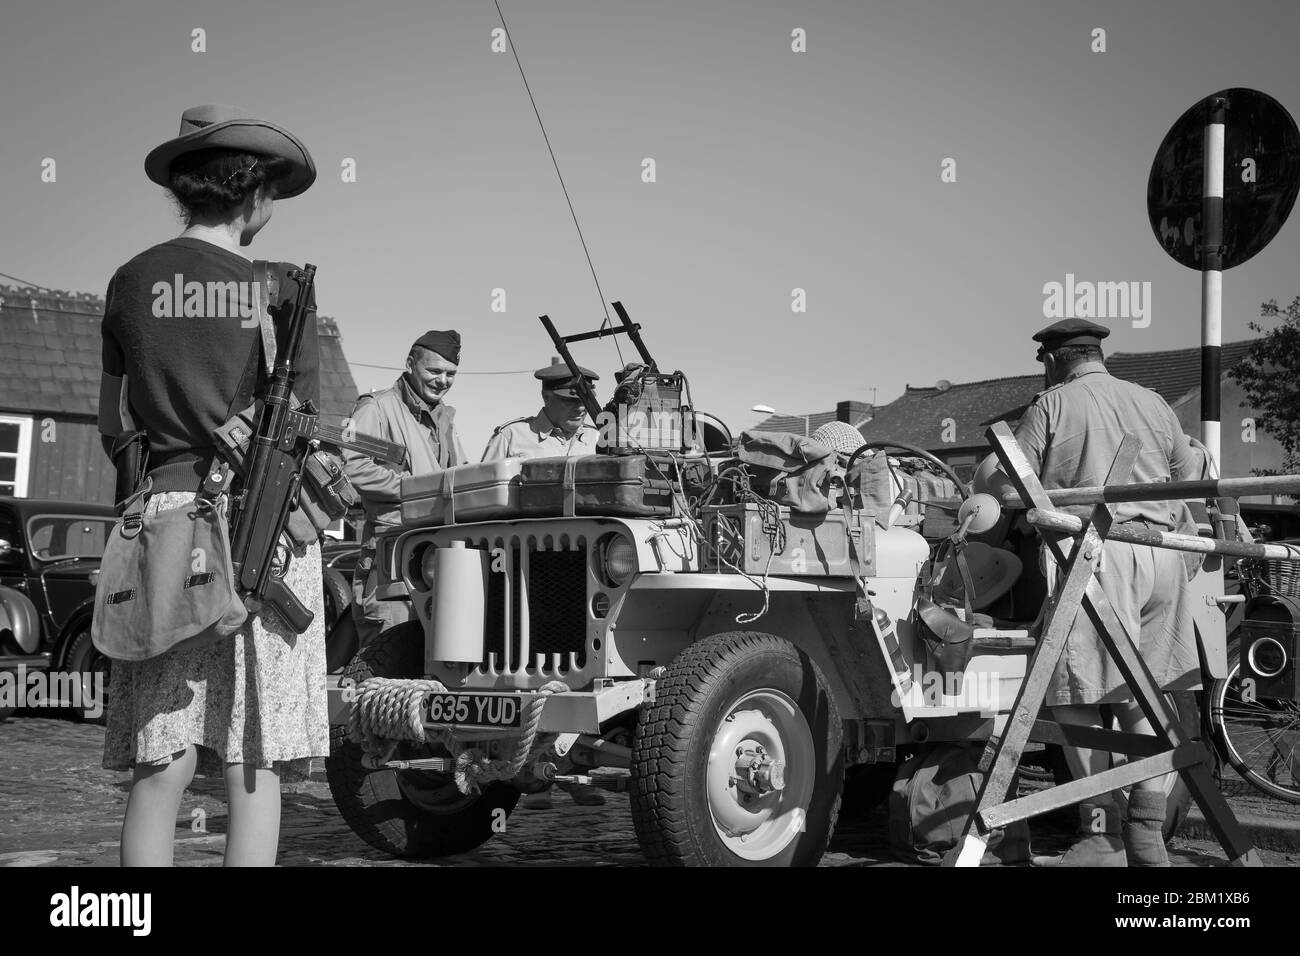 Vue monochrome de la jeep MB de Willy, jeep militaire d'époque de l'armée américaine exposée Severn Valley Railway 1940, événement d'été de la Seconde Guerre mondiale, Royaume-Uni. Banque D'Images